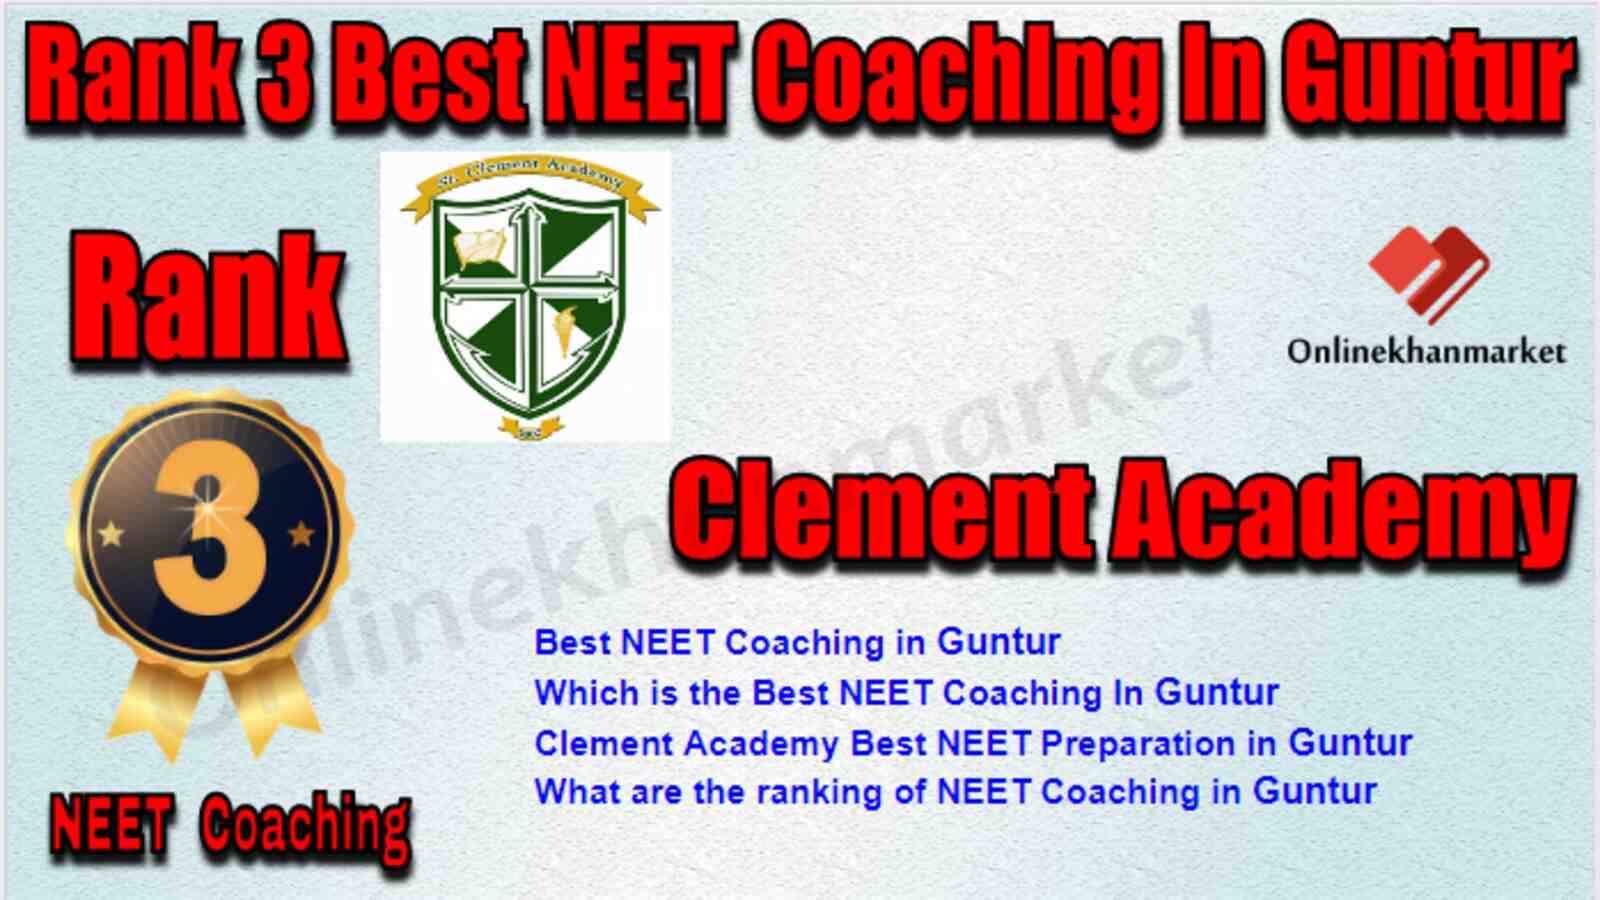 Rank 3 Best NEET Coaching in Guntur